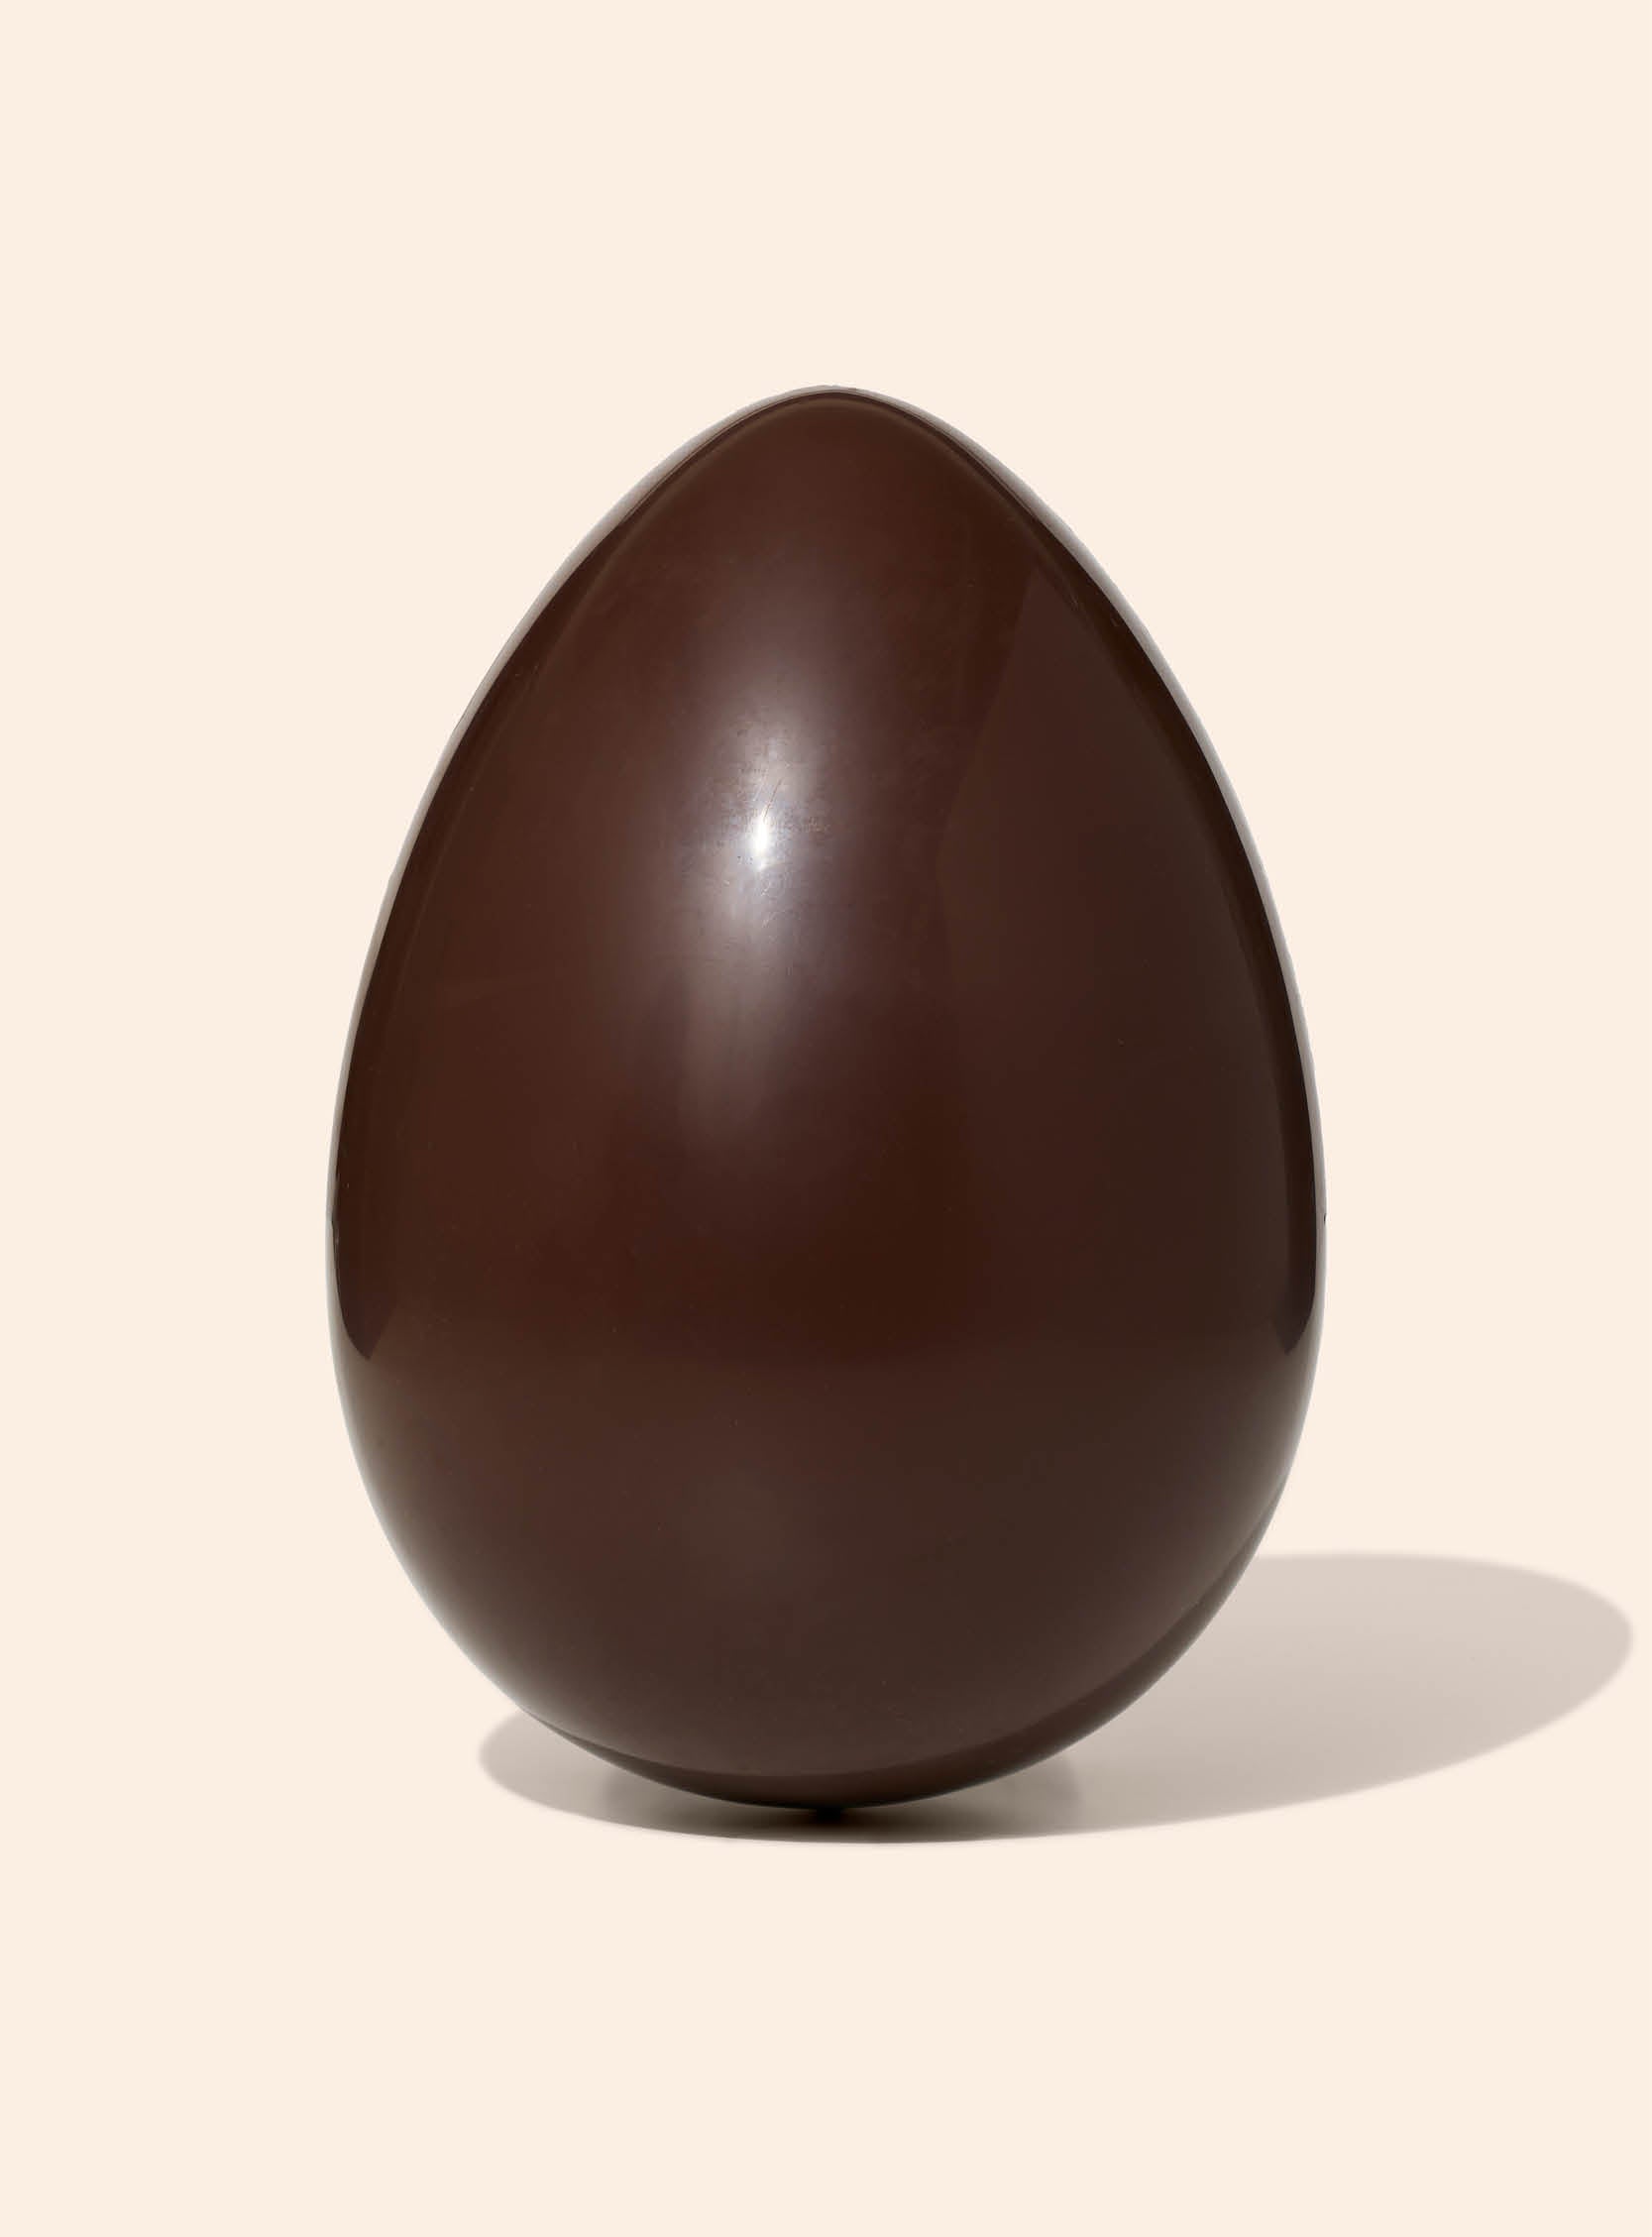 Giant Dark Chocolate Easter Egg